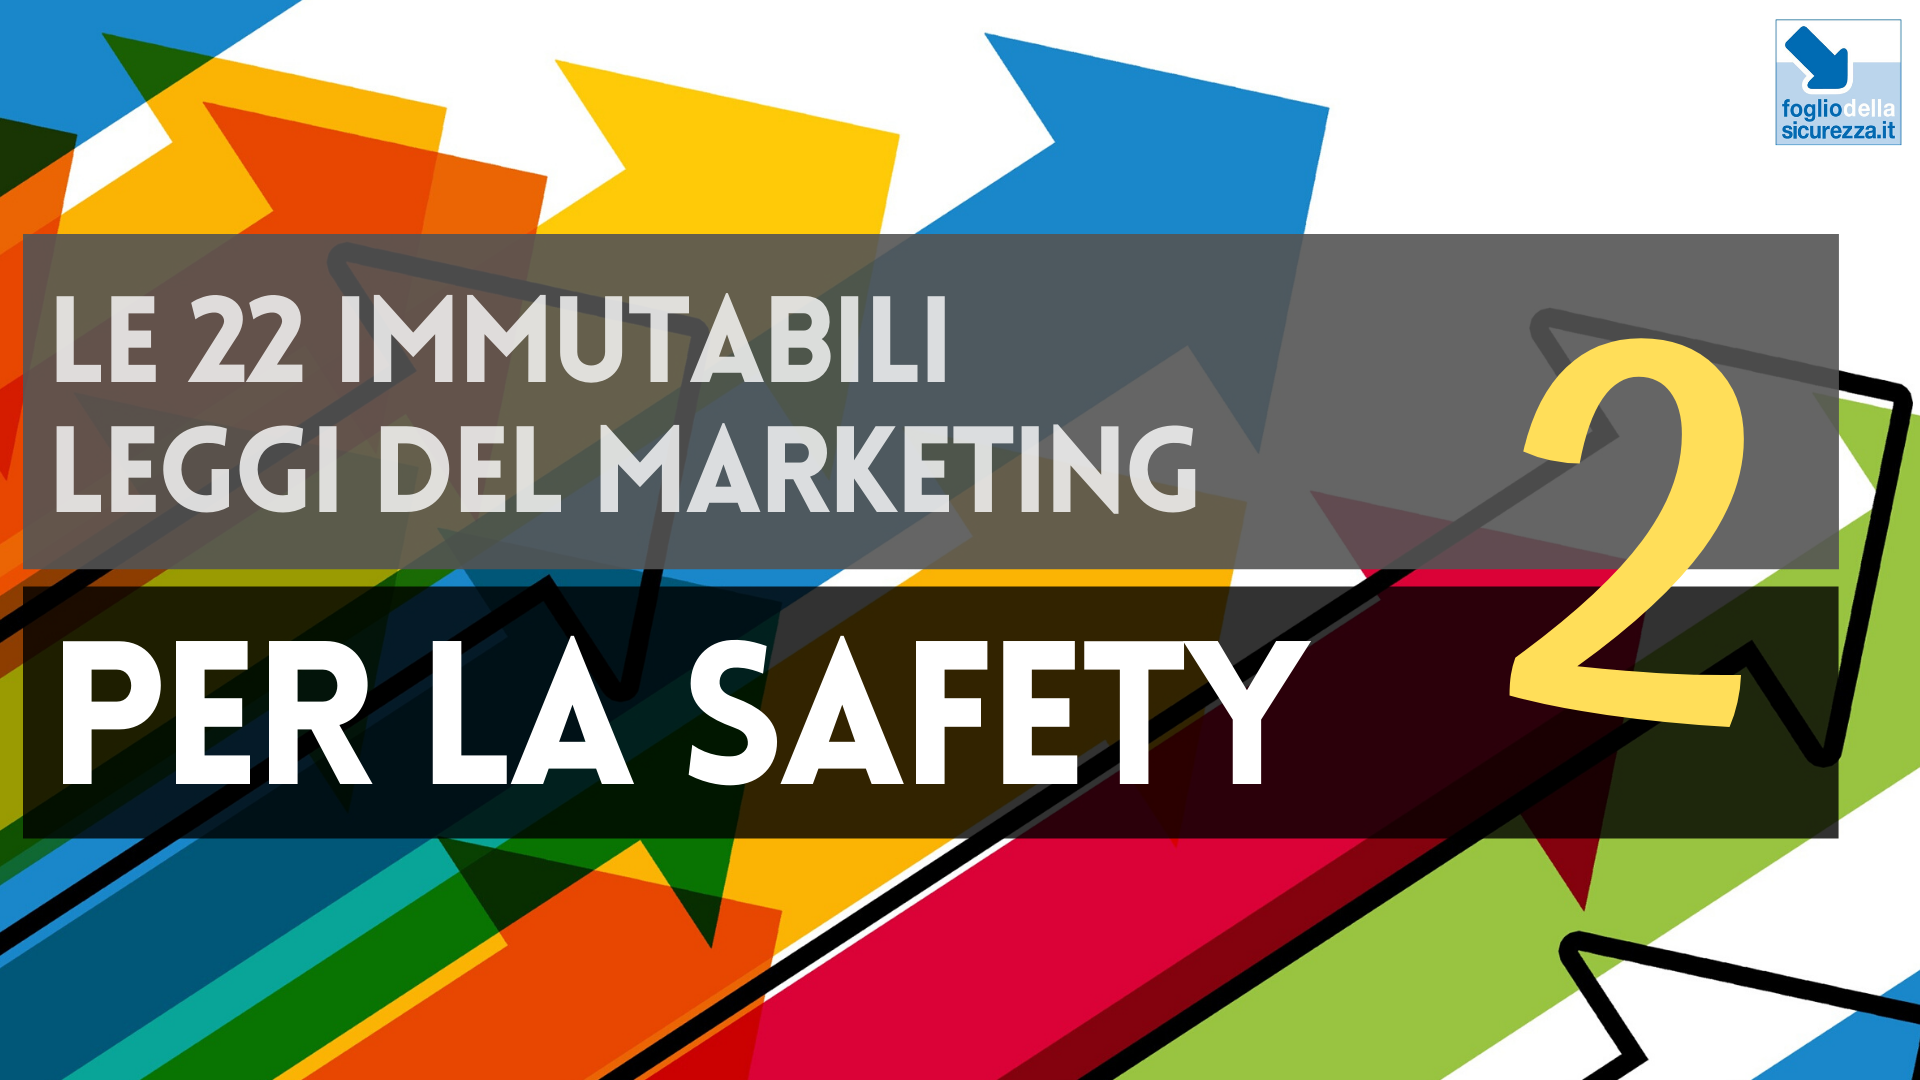 Le 22 immutabili leggi del marketing per la safety 02